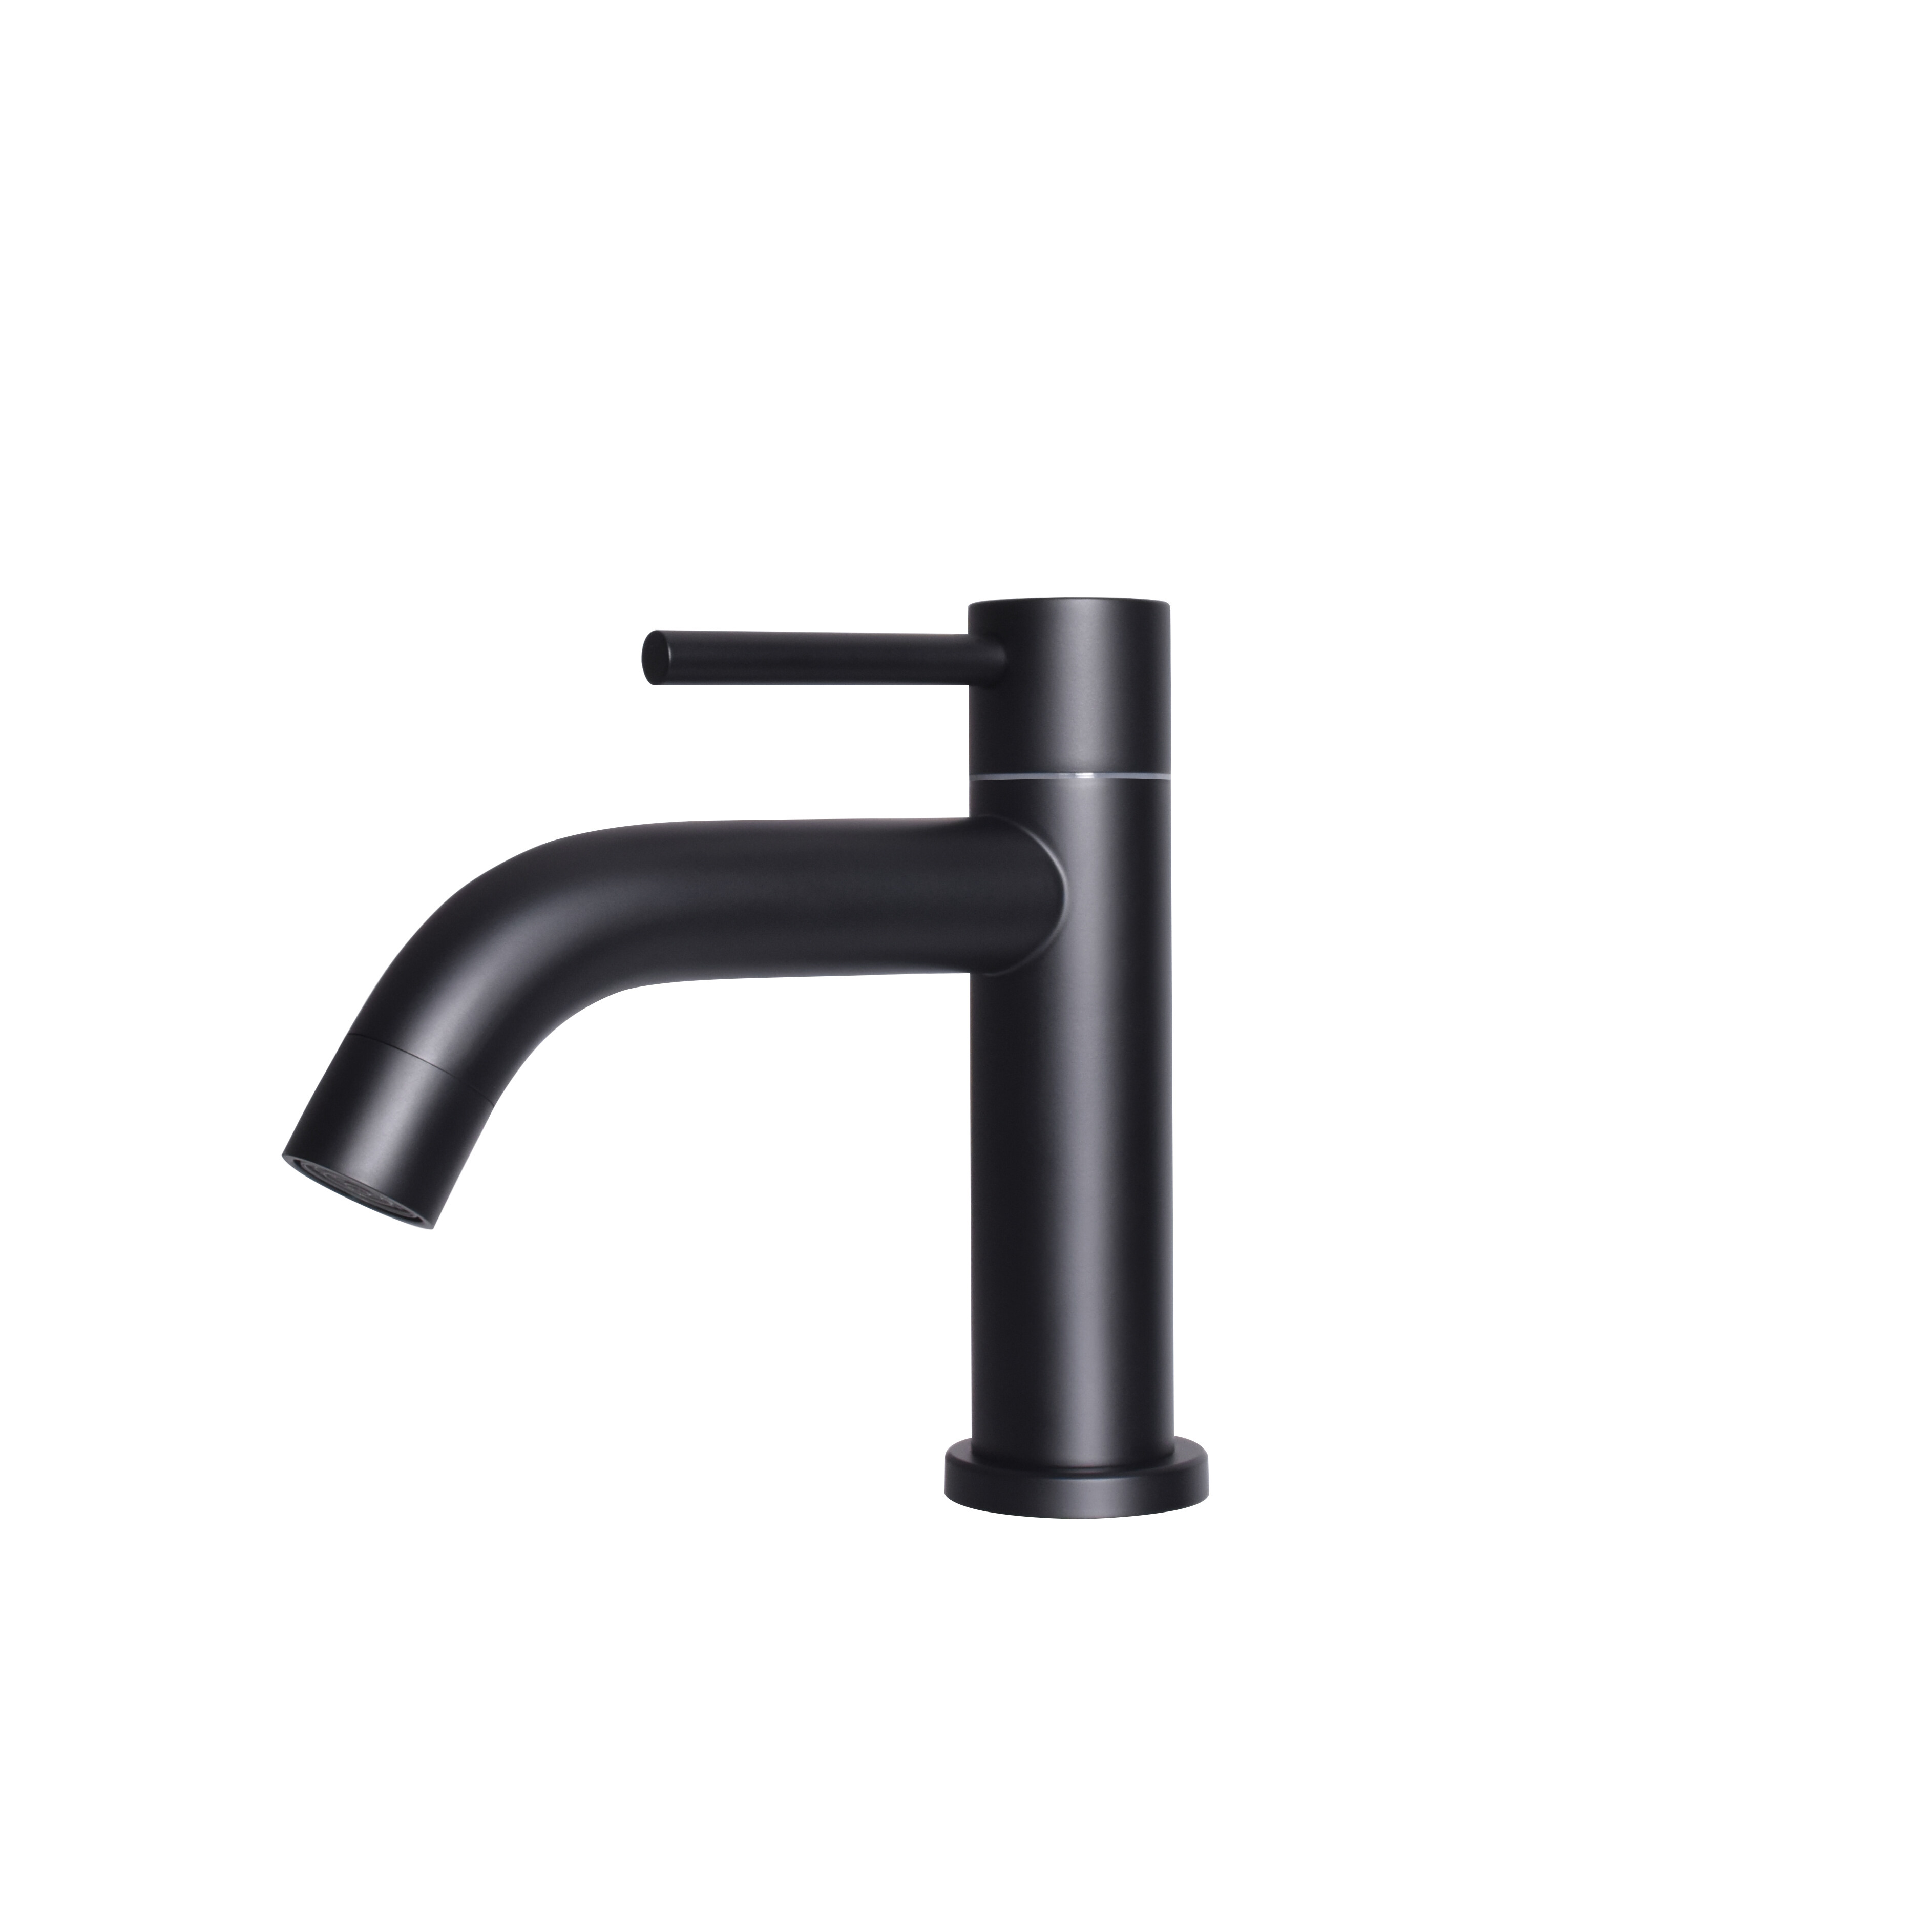 cheap industrial bar faucet supplier